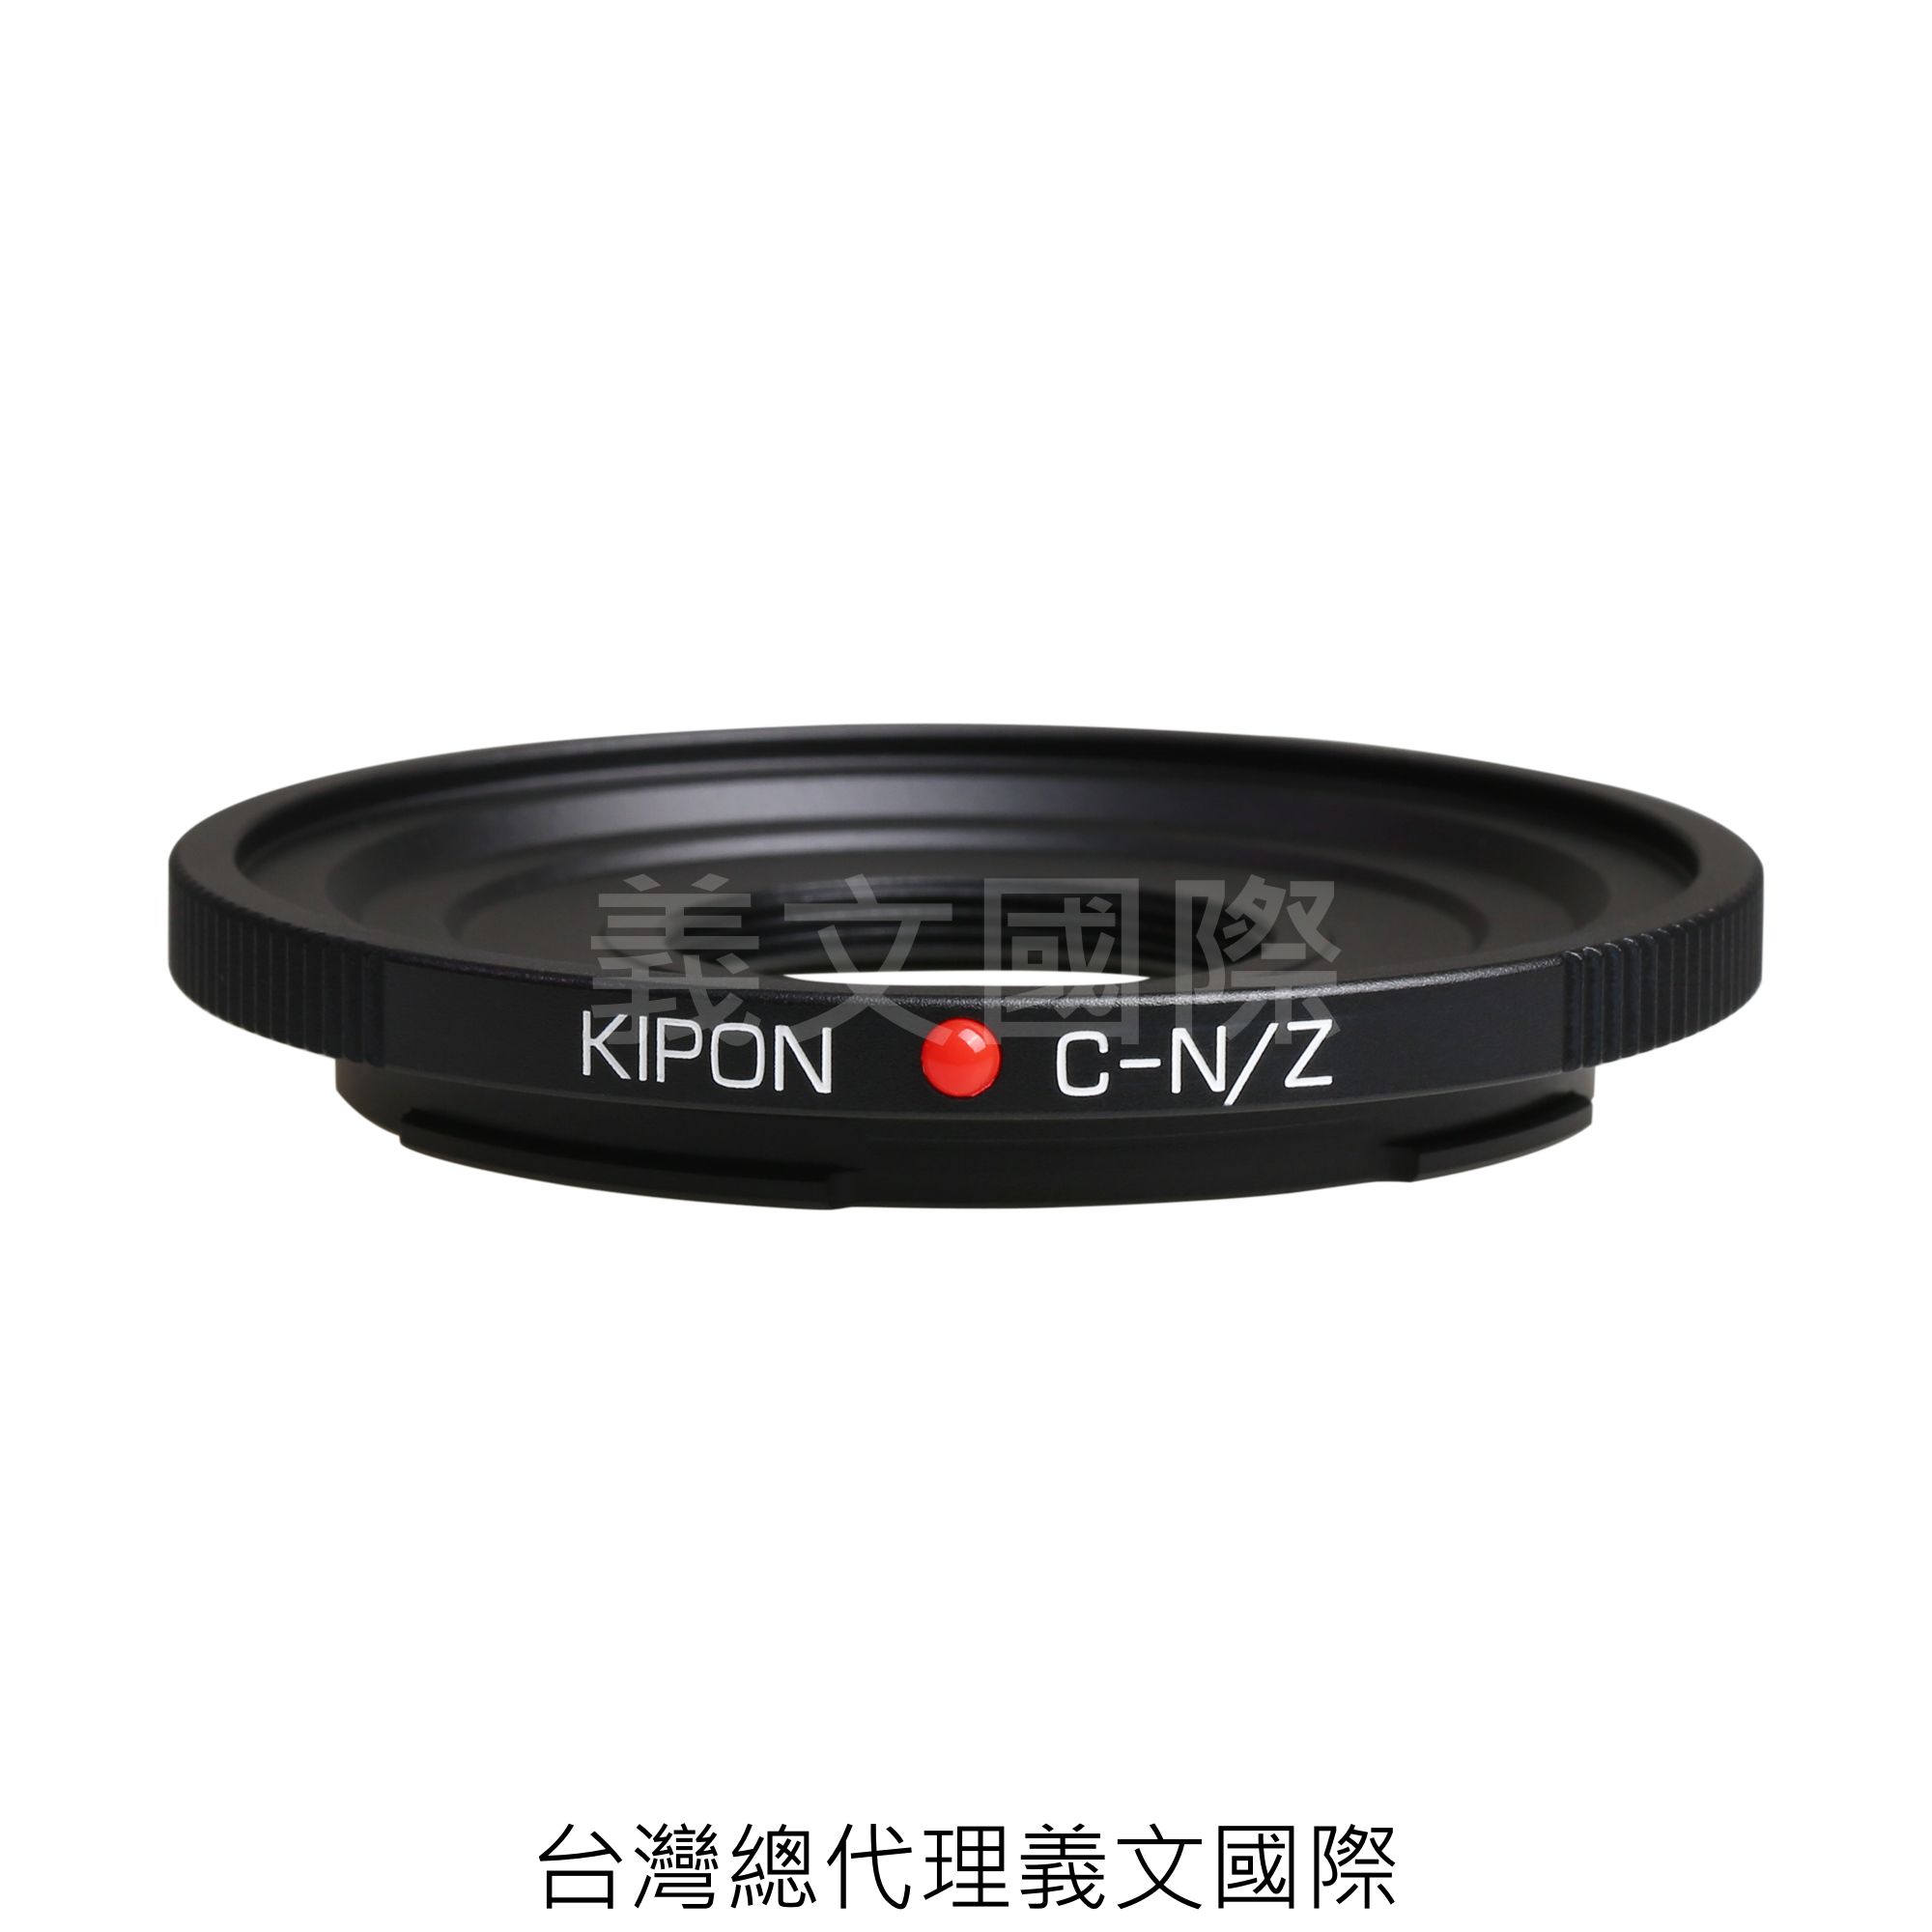 Kipon轉接環專賣店:C mount -NIK Z(NIKON,尼康,Z6,Z7)